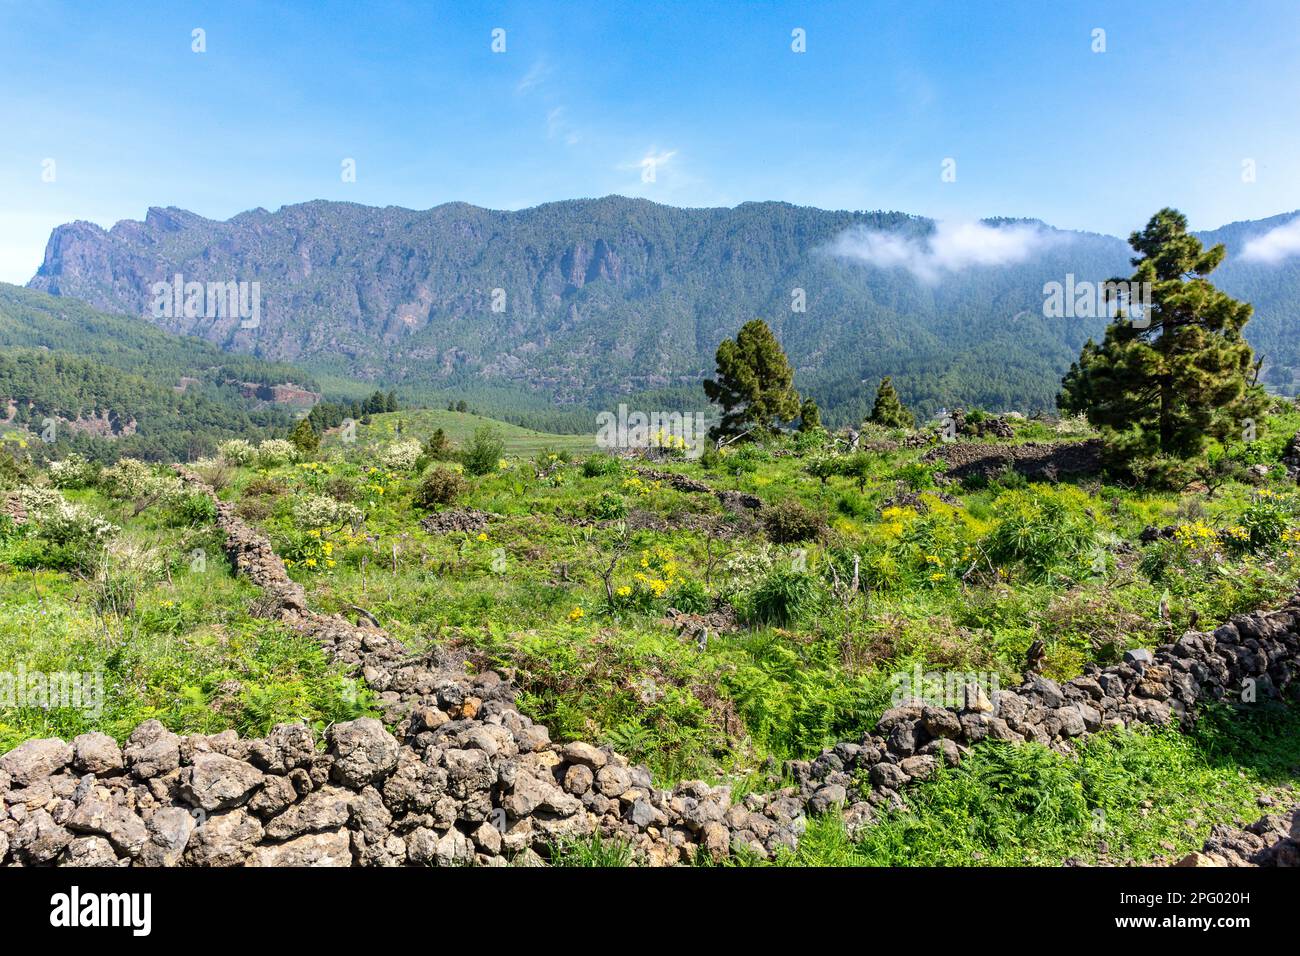 Parque Nacional de la Caldera de Taburiente (Caldera de Taburiente National Park), Ciudad de El Paso, La Palma, Canary Islands, Spain Stock Photo